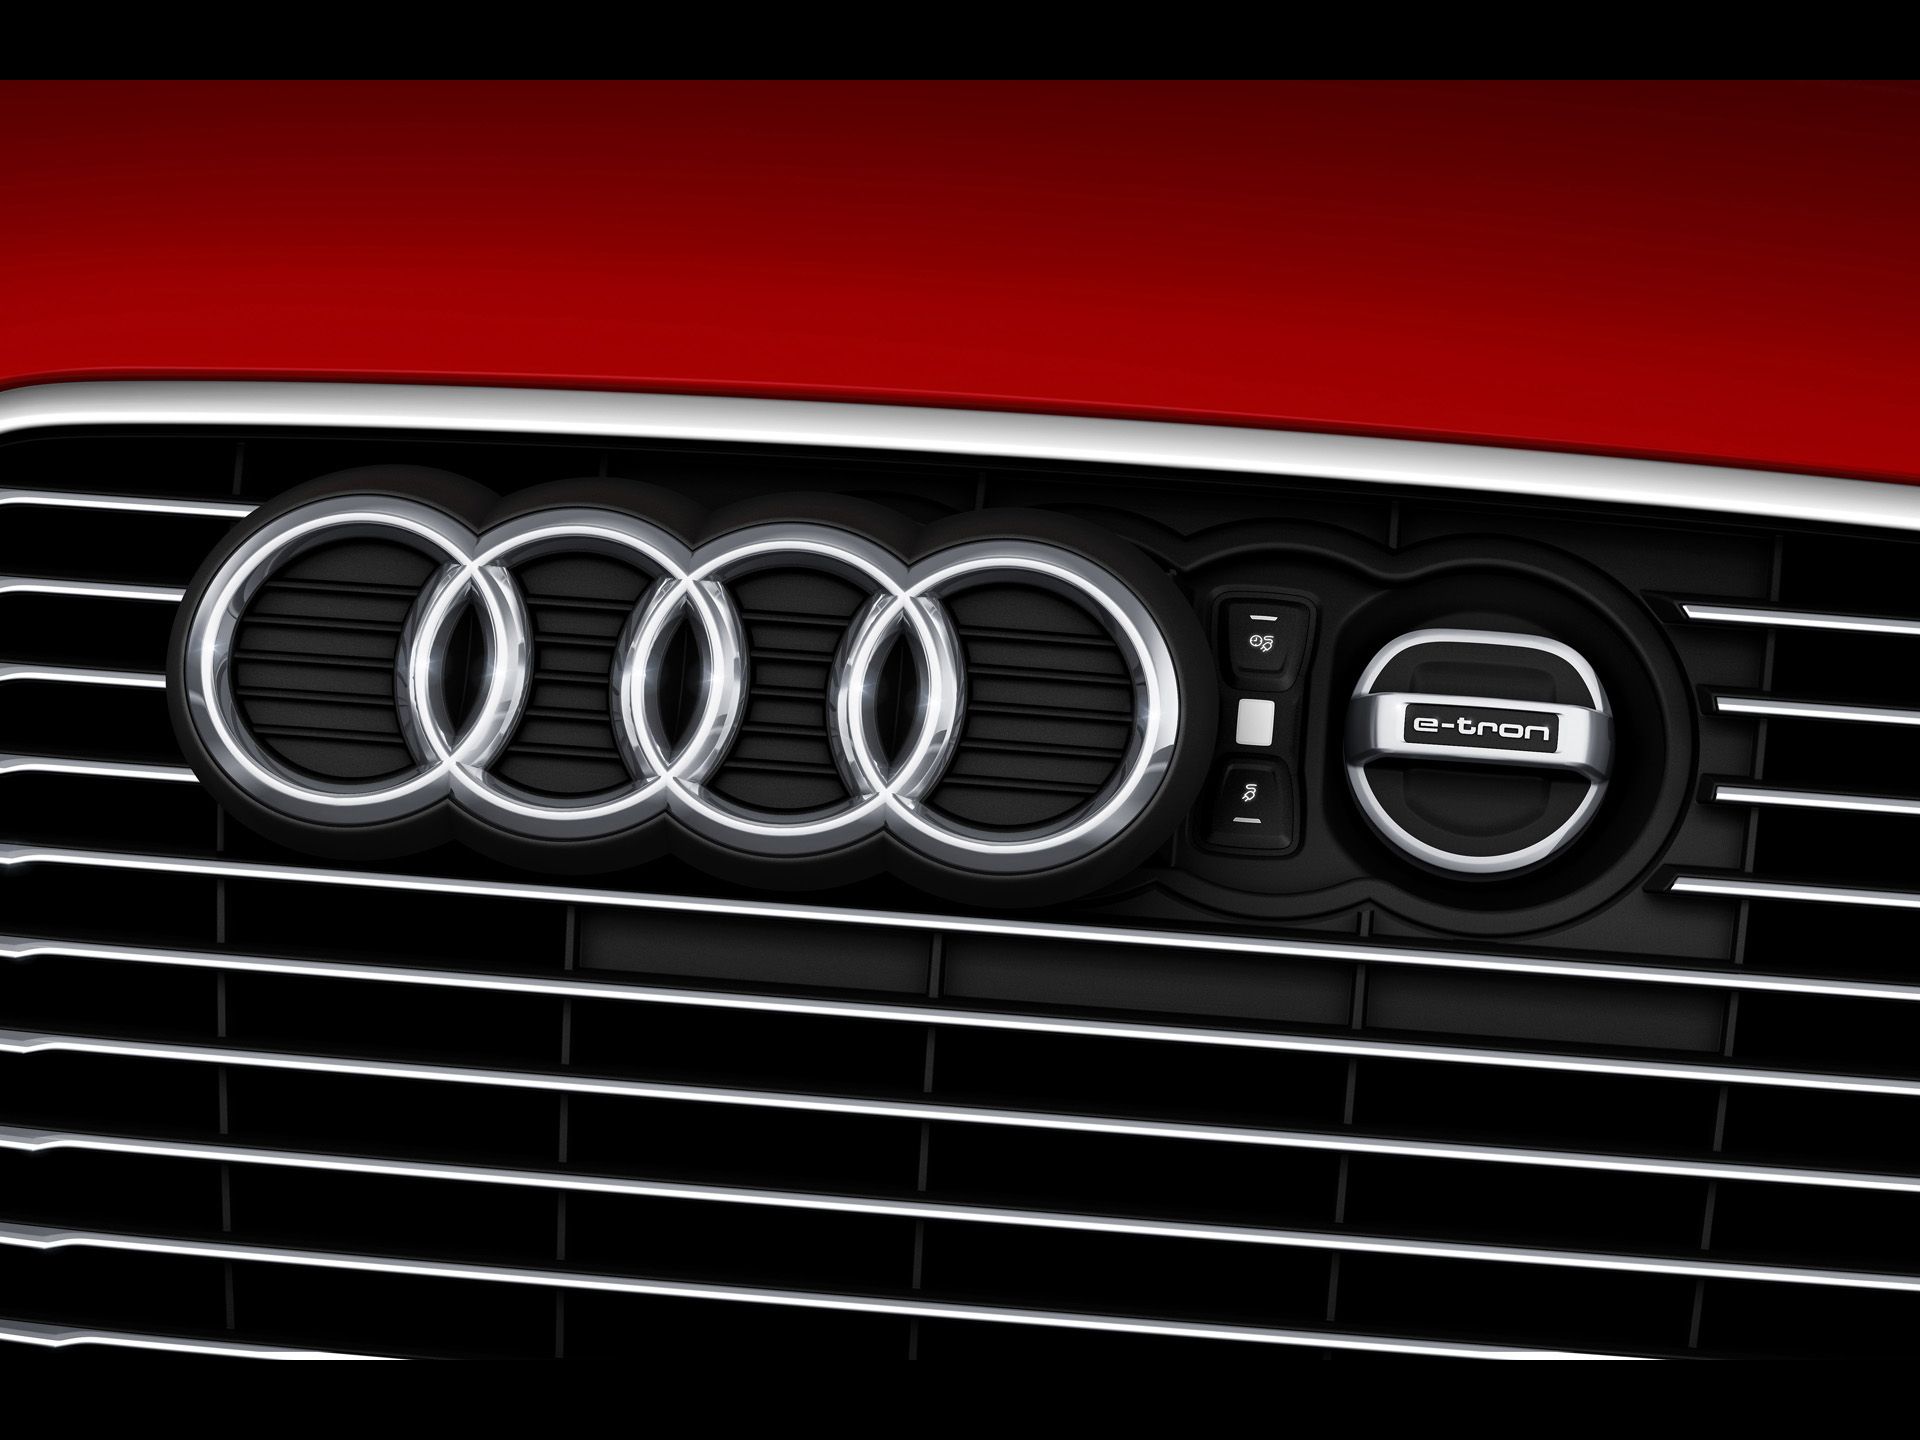 2013 Audi A3 e-tron - Four Rings - 1920x1440 - Wallpaper